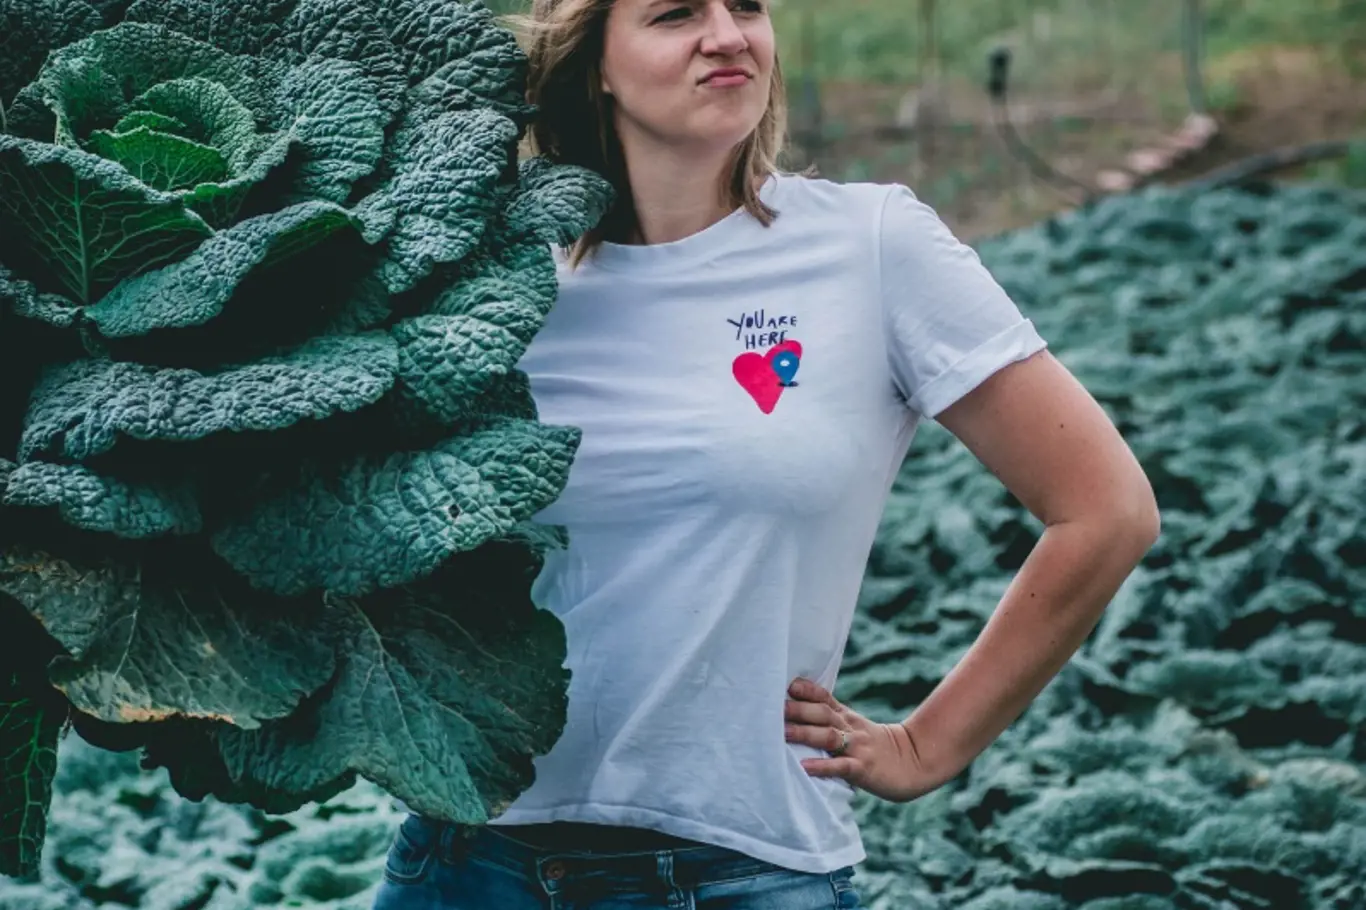 Anna Grosmanová na Instagramu Foodpioneer představuje české farmáře